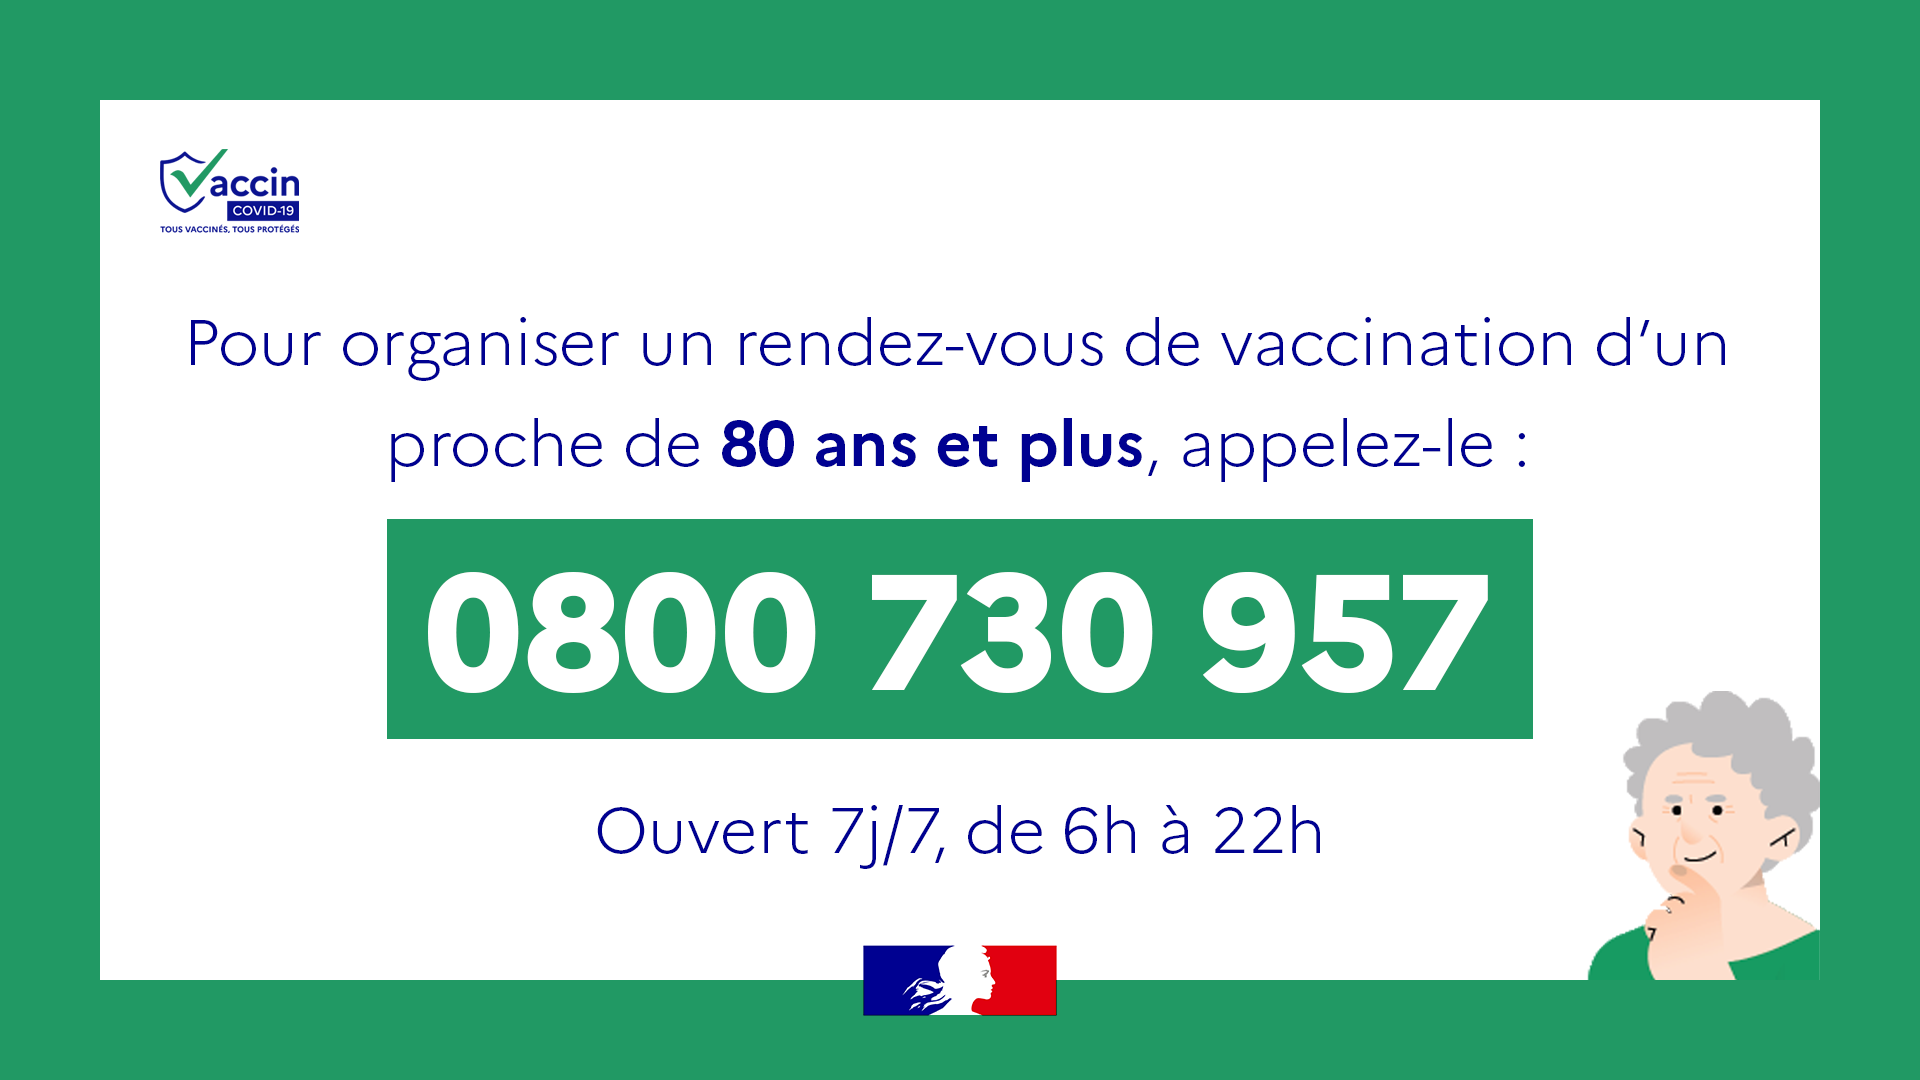 Pour organiser un rendez-vous de vaccination d'un proche de 80 ans et plus, appelez le 0800 730 957. Ouvert 7j/7, de 6h à 22h.